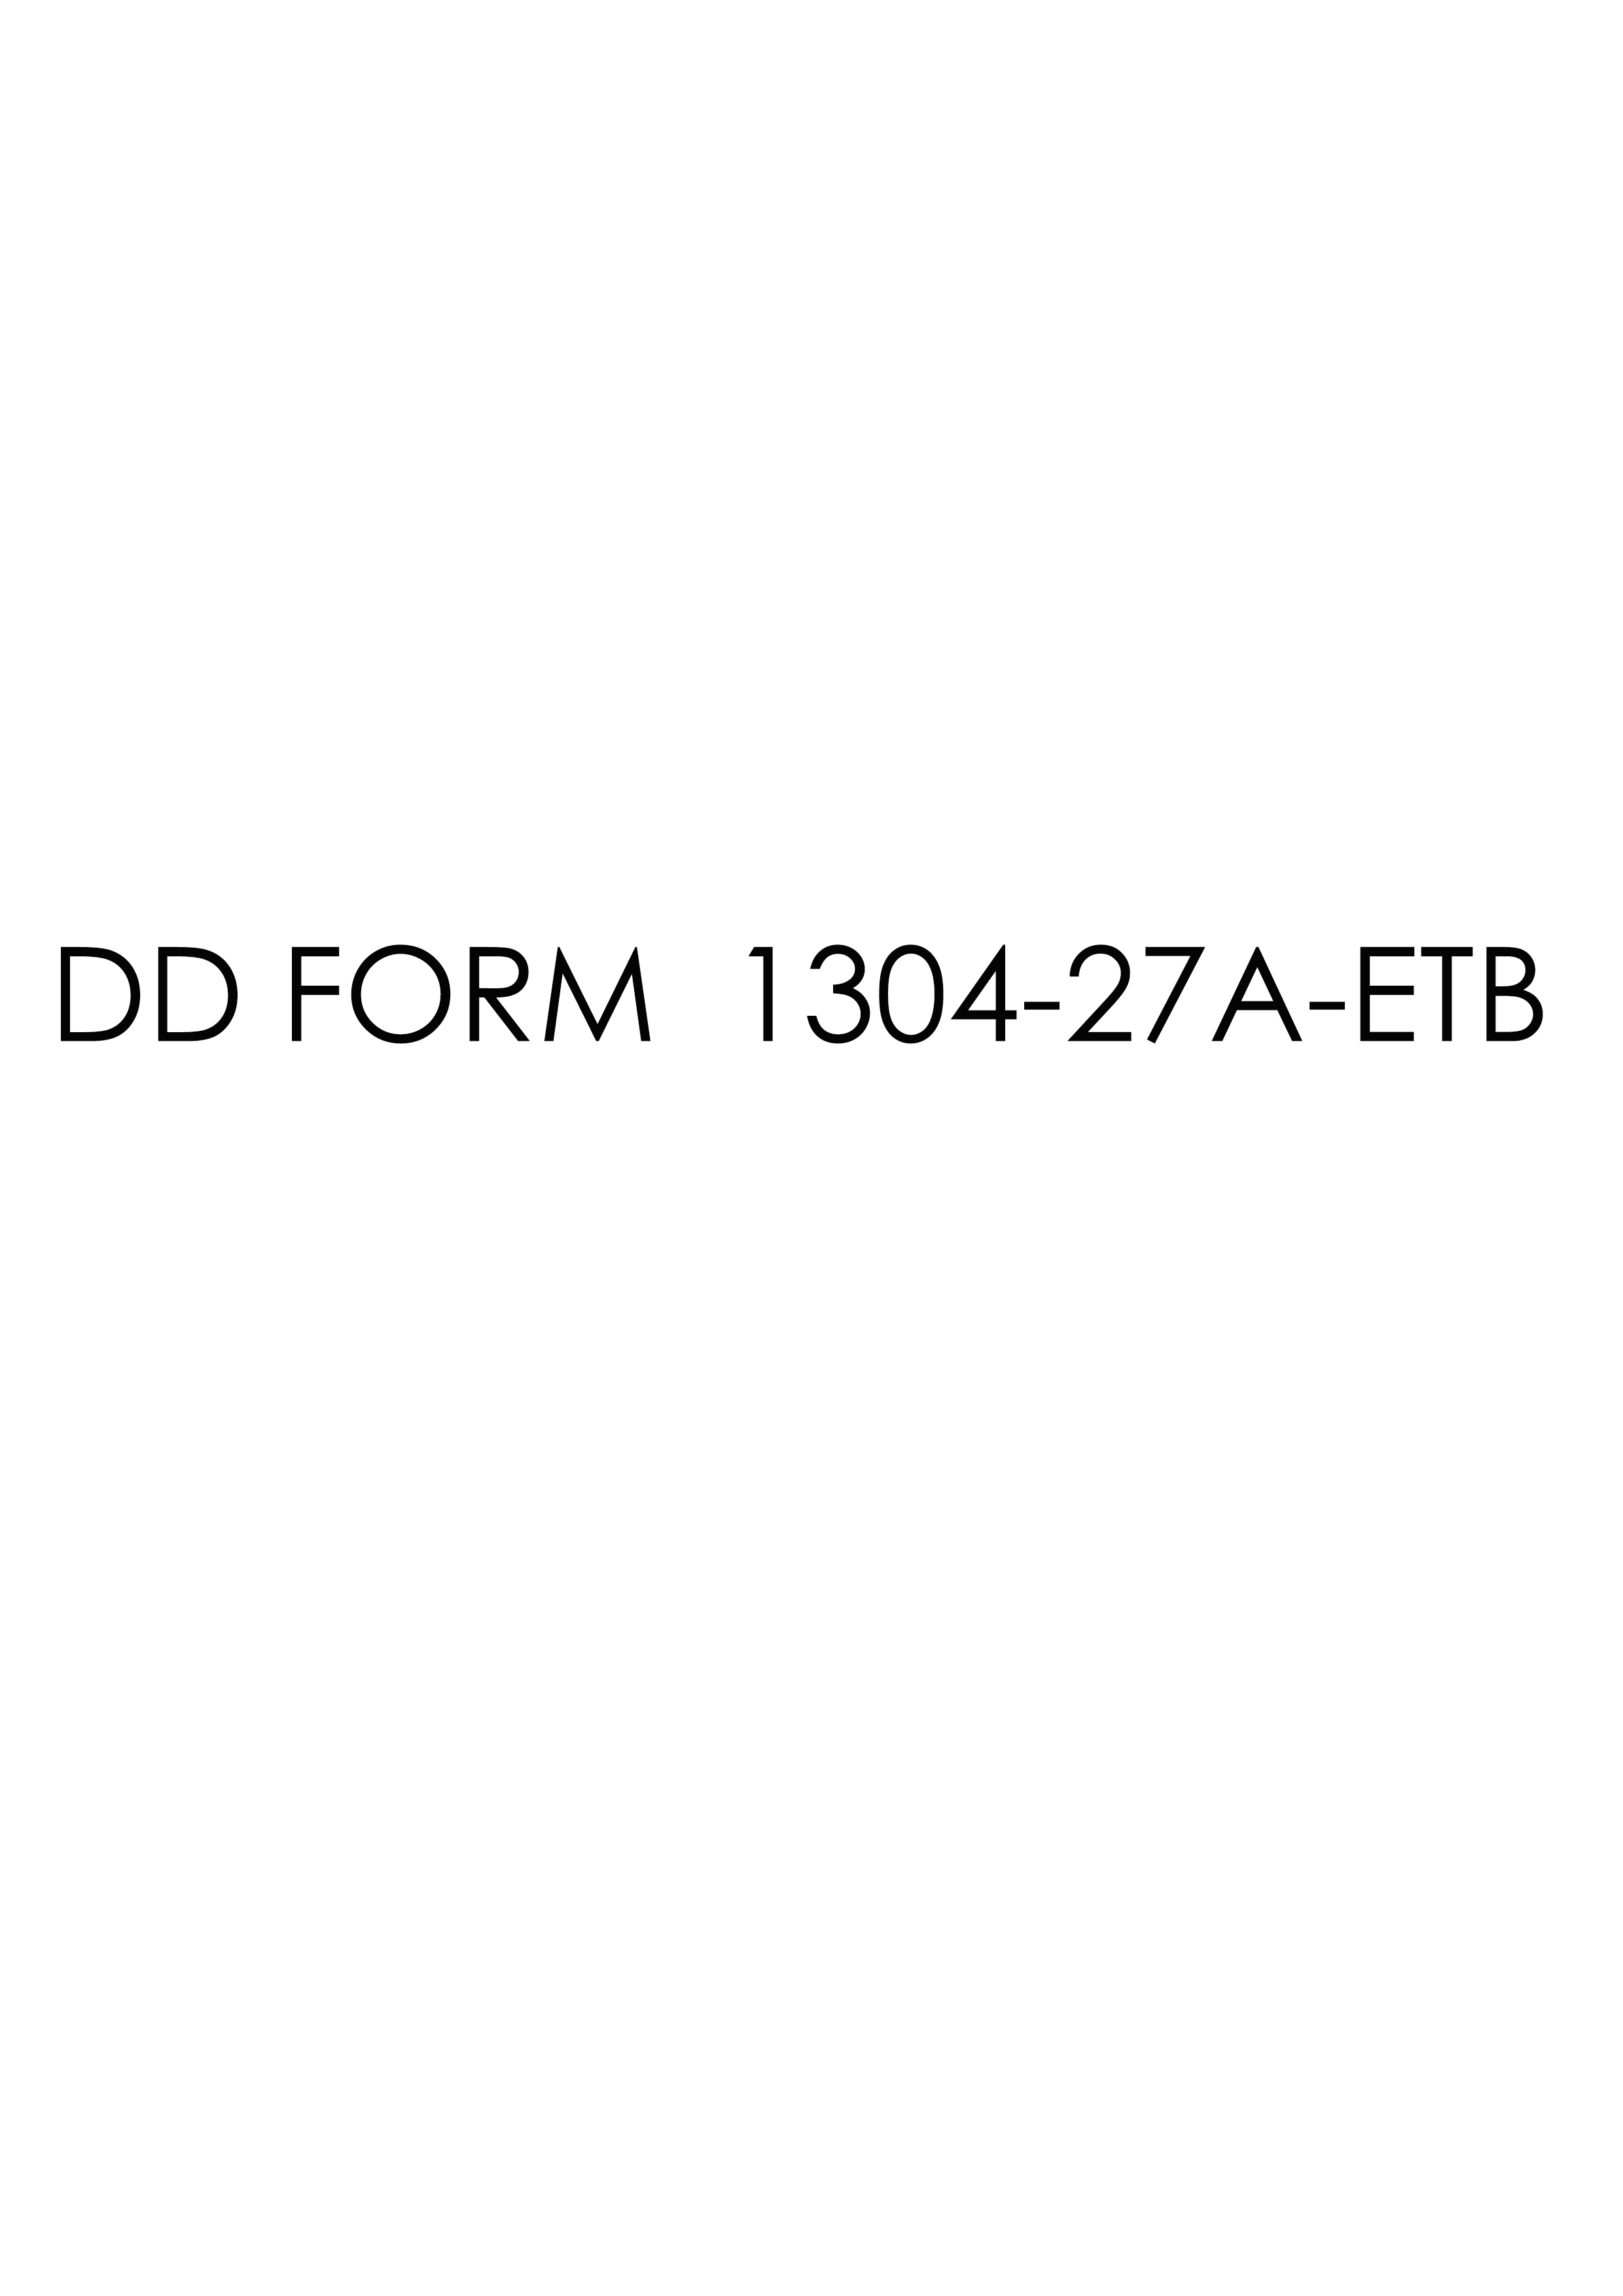 Download dd 1304-27A-ETB Form